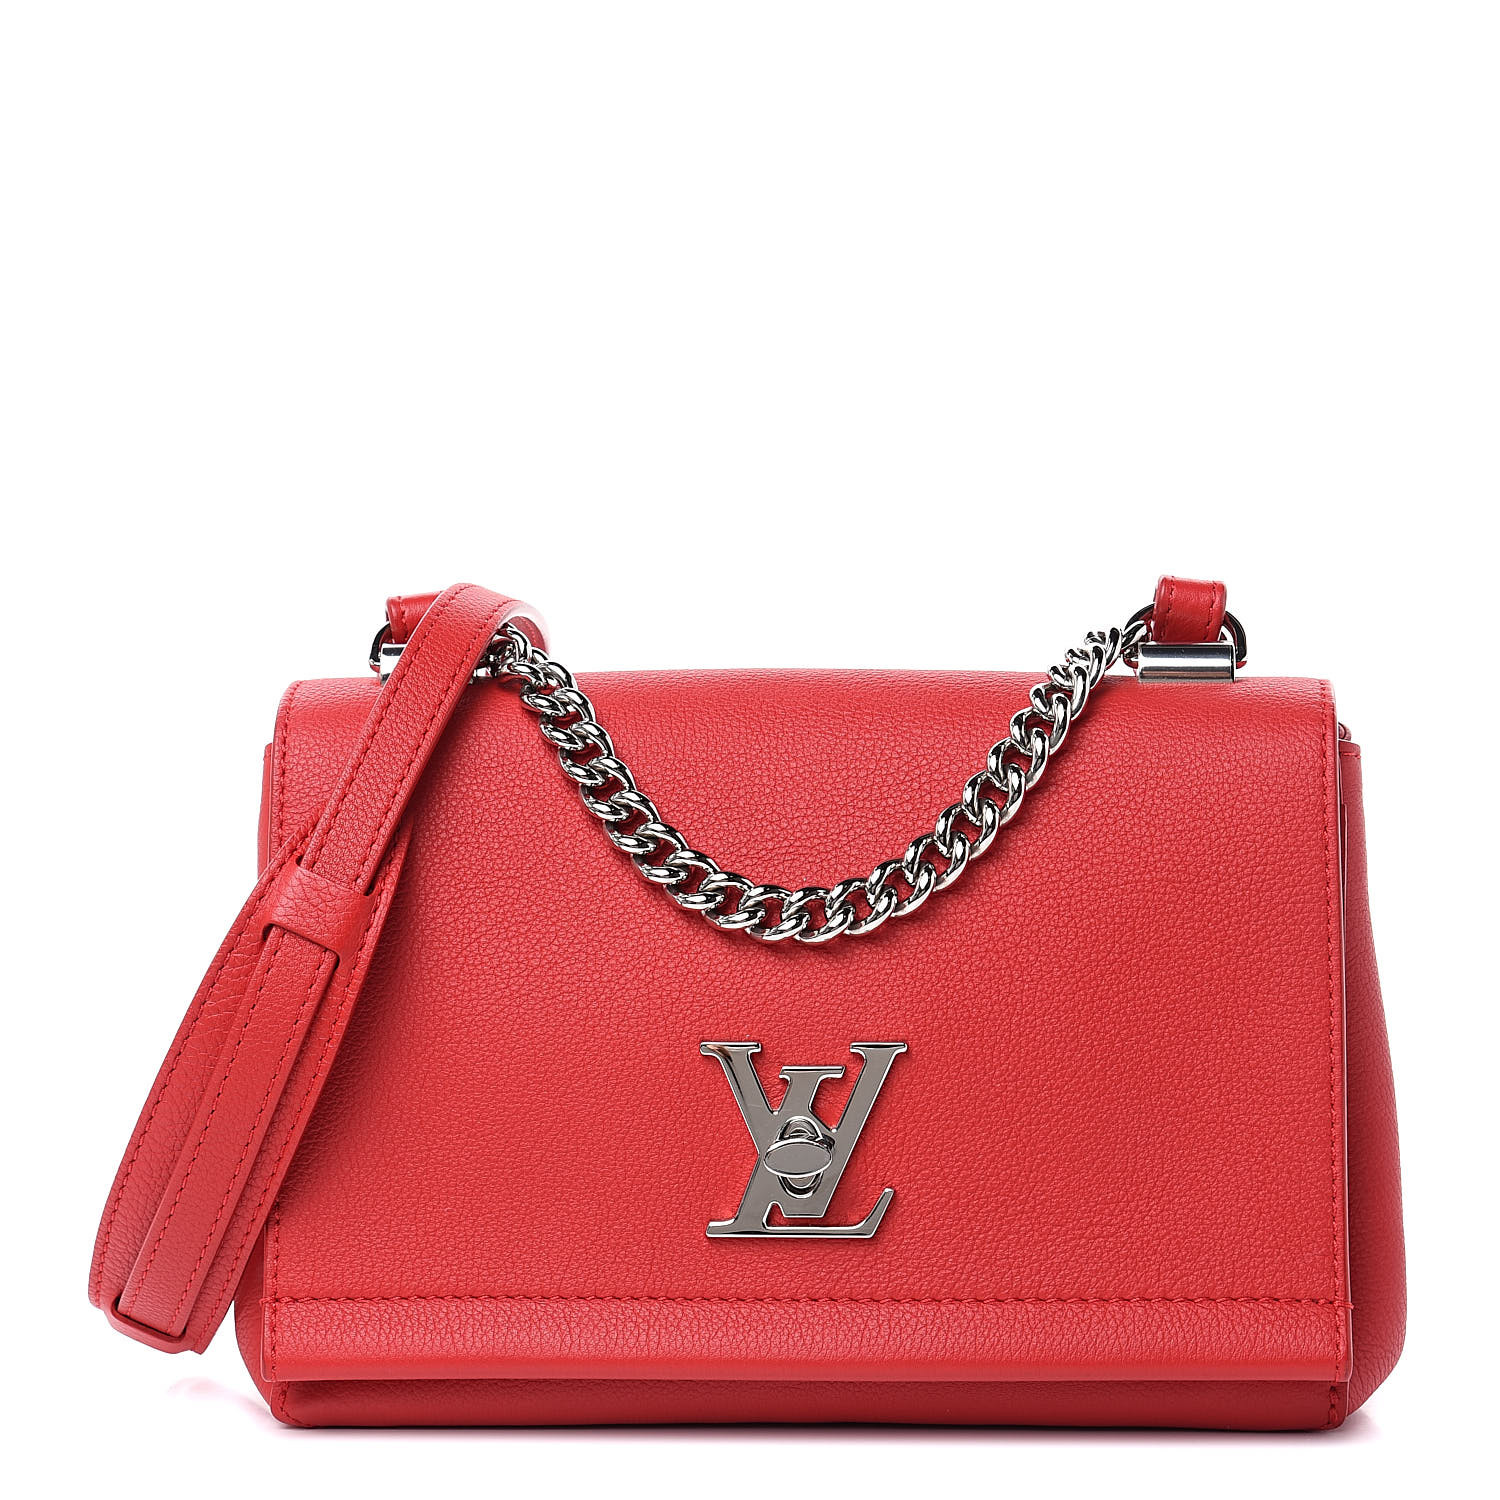 Louis Vuitton Mylockme Chain Bag, Unboxing